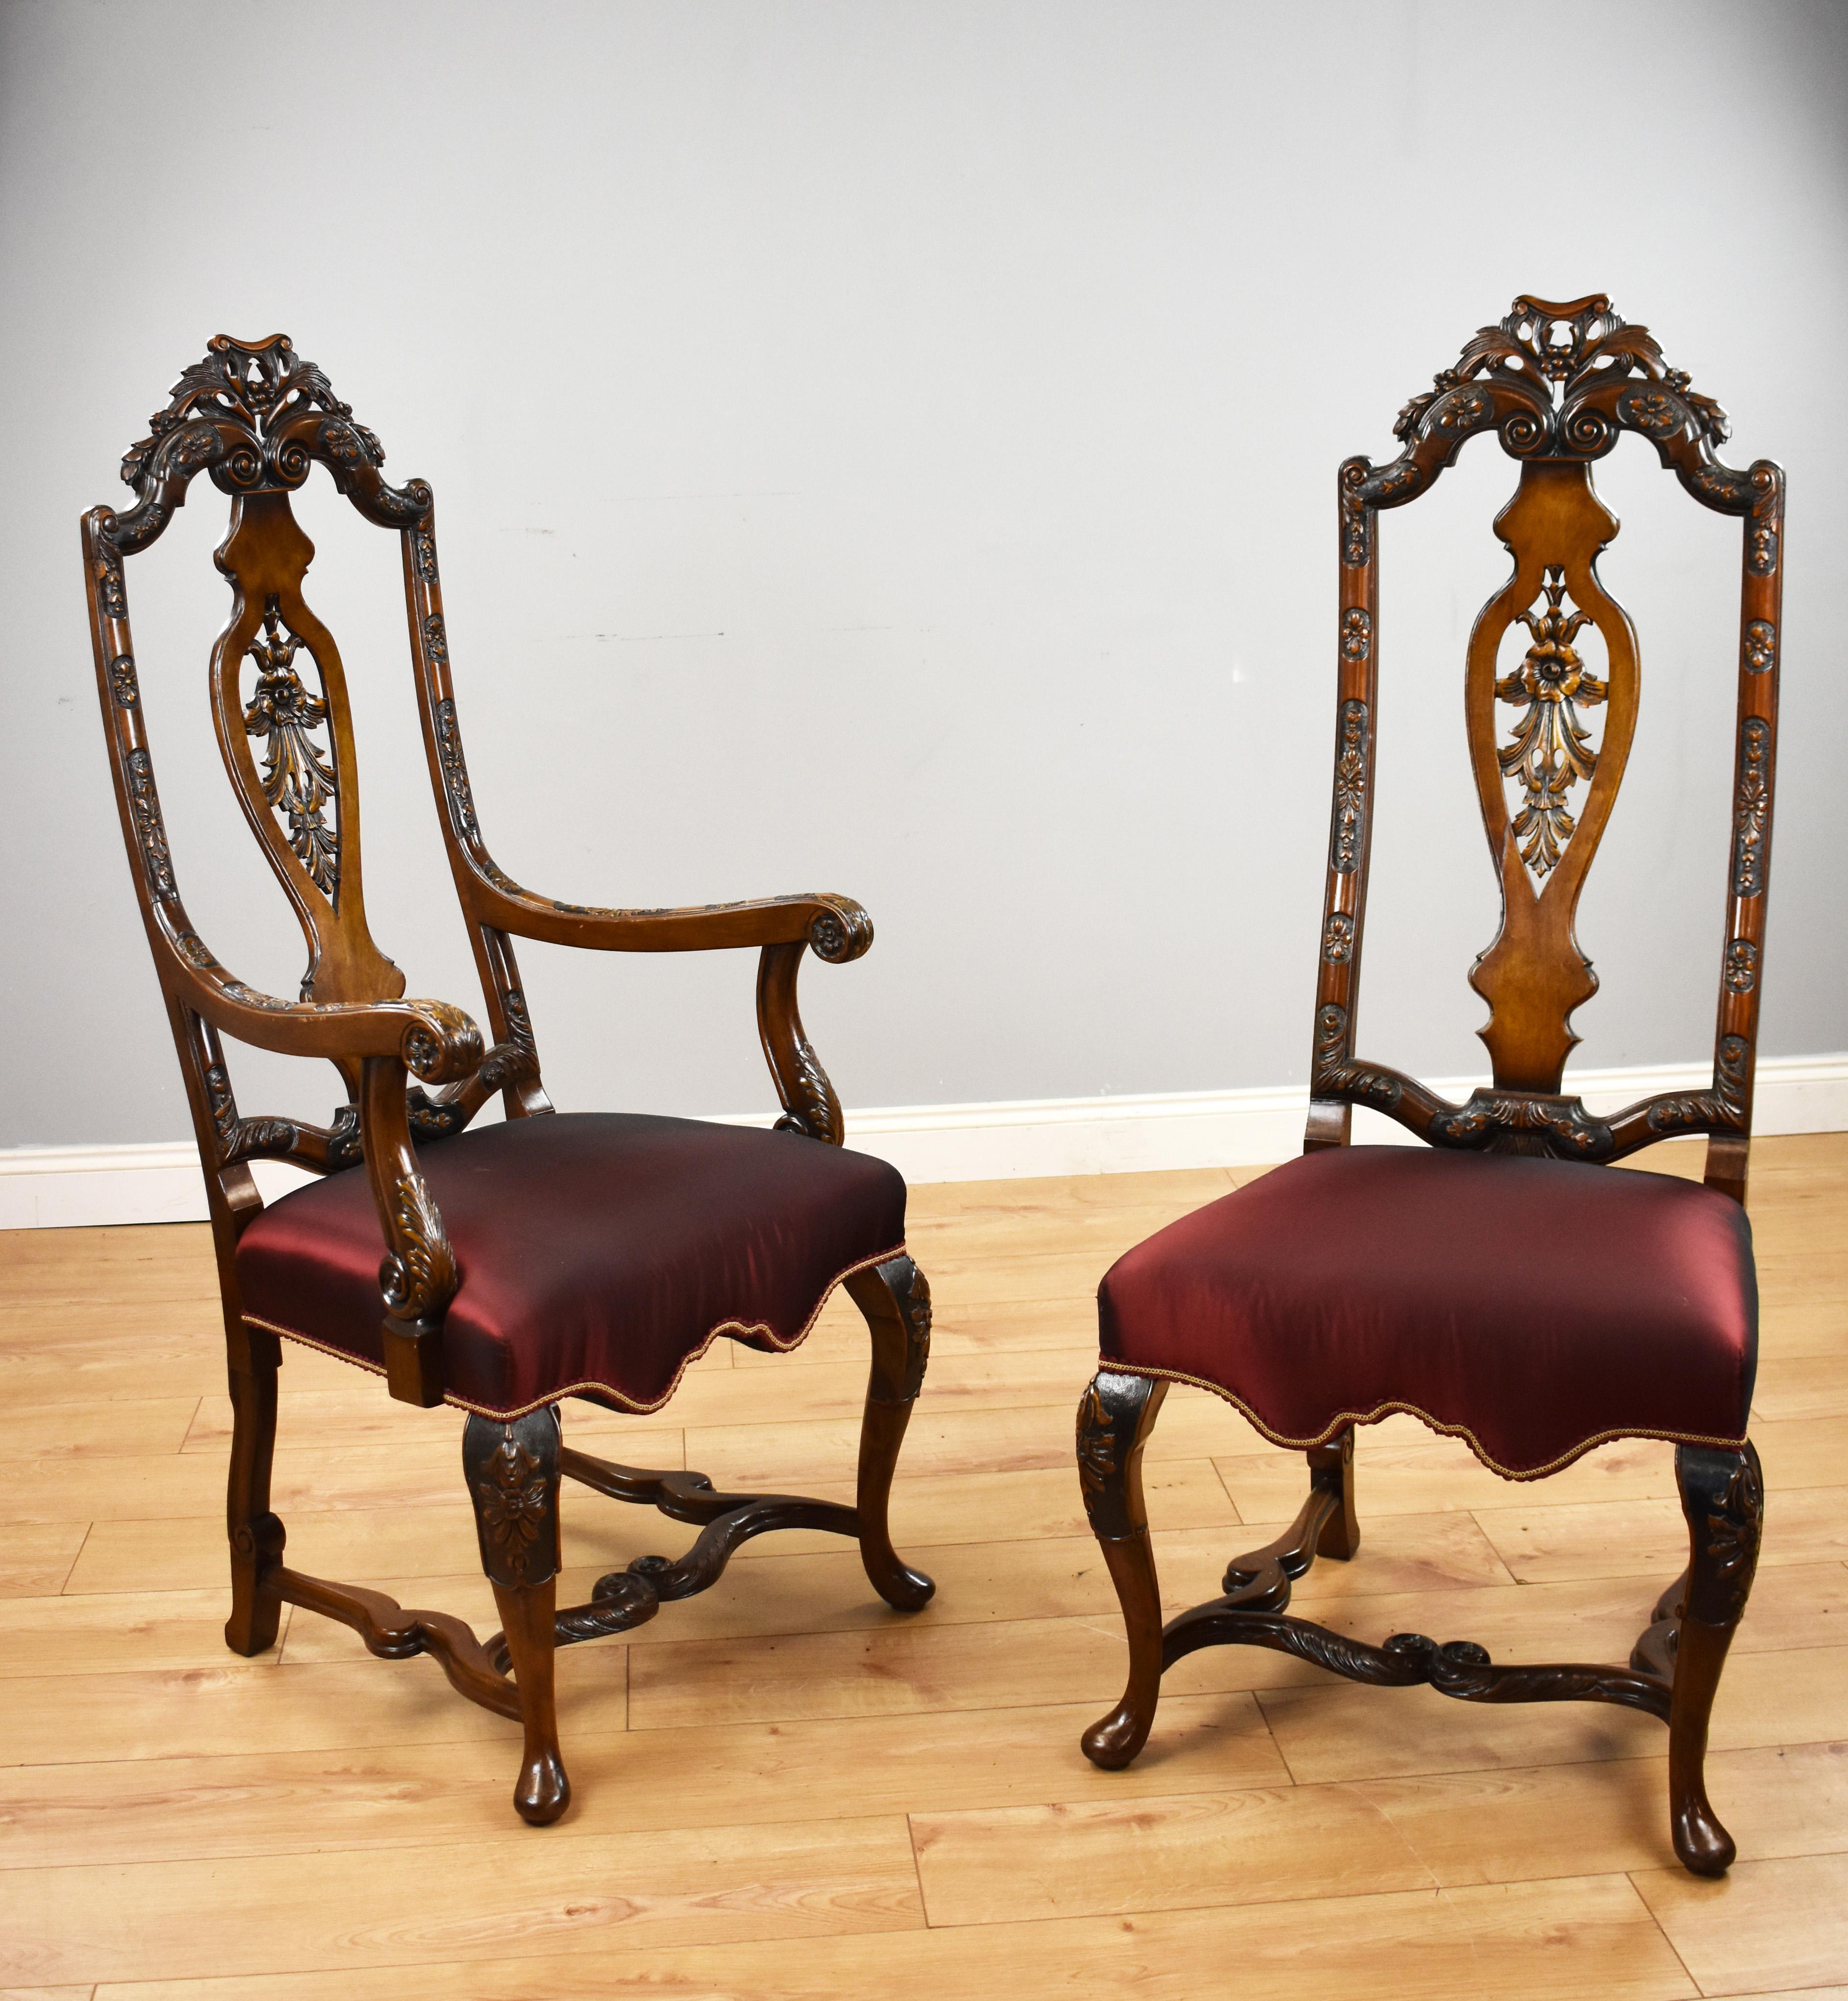 Nous proposons à la vente un ensemble de 14 chaises de style Queen Anne de bonne qualité, chacune ayant un haut dossier avec une sculpture sur le dessus, reposant sur des pieds cabriole élégamment sculptés et unis par une civière ornementée et